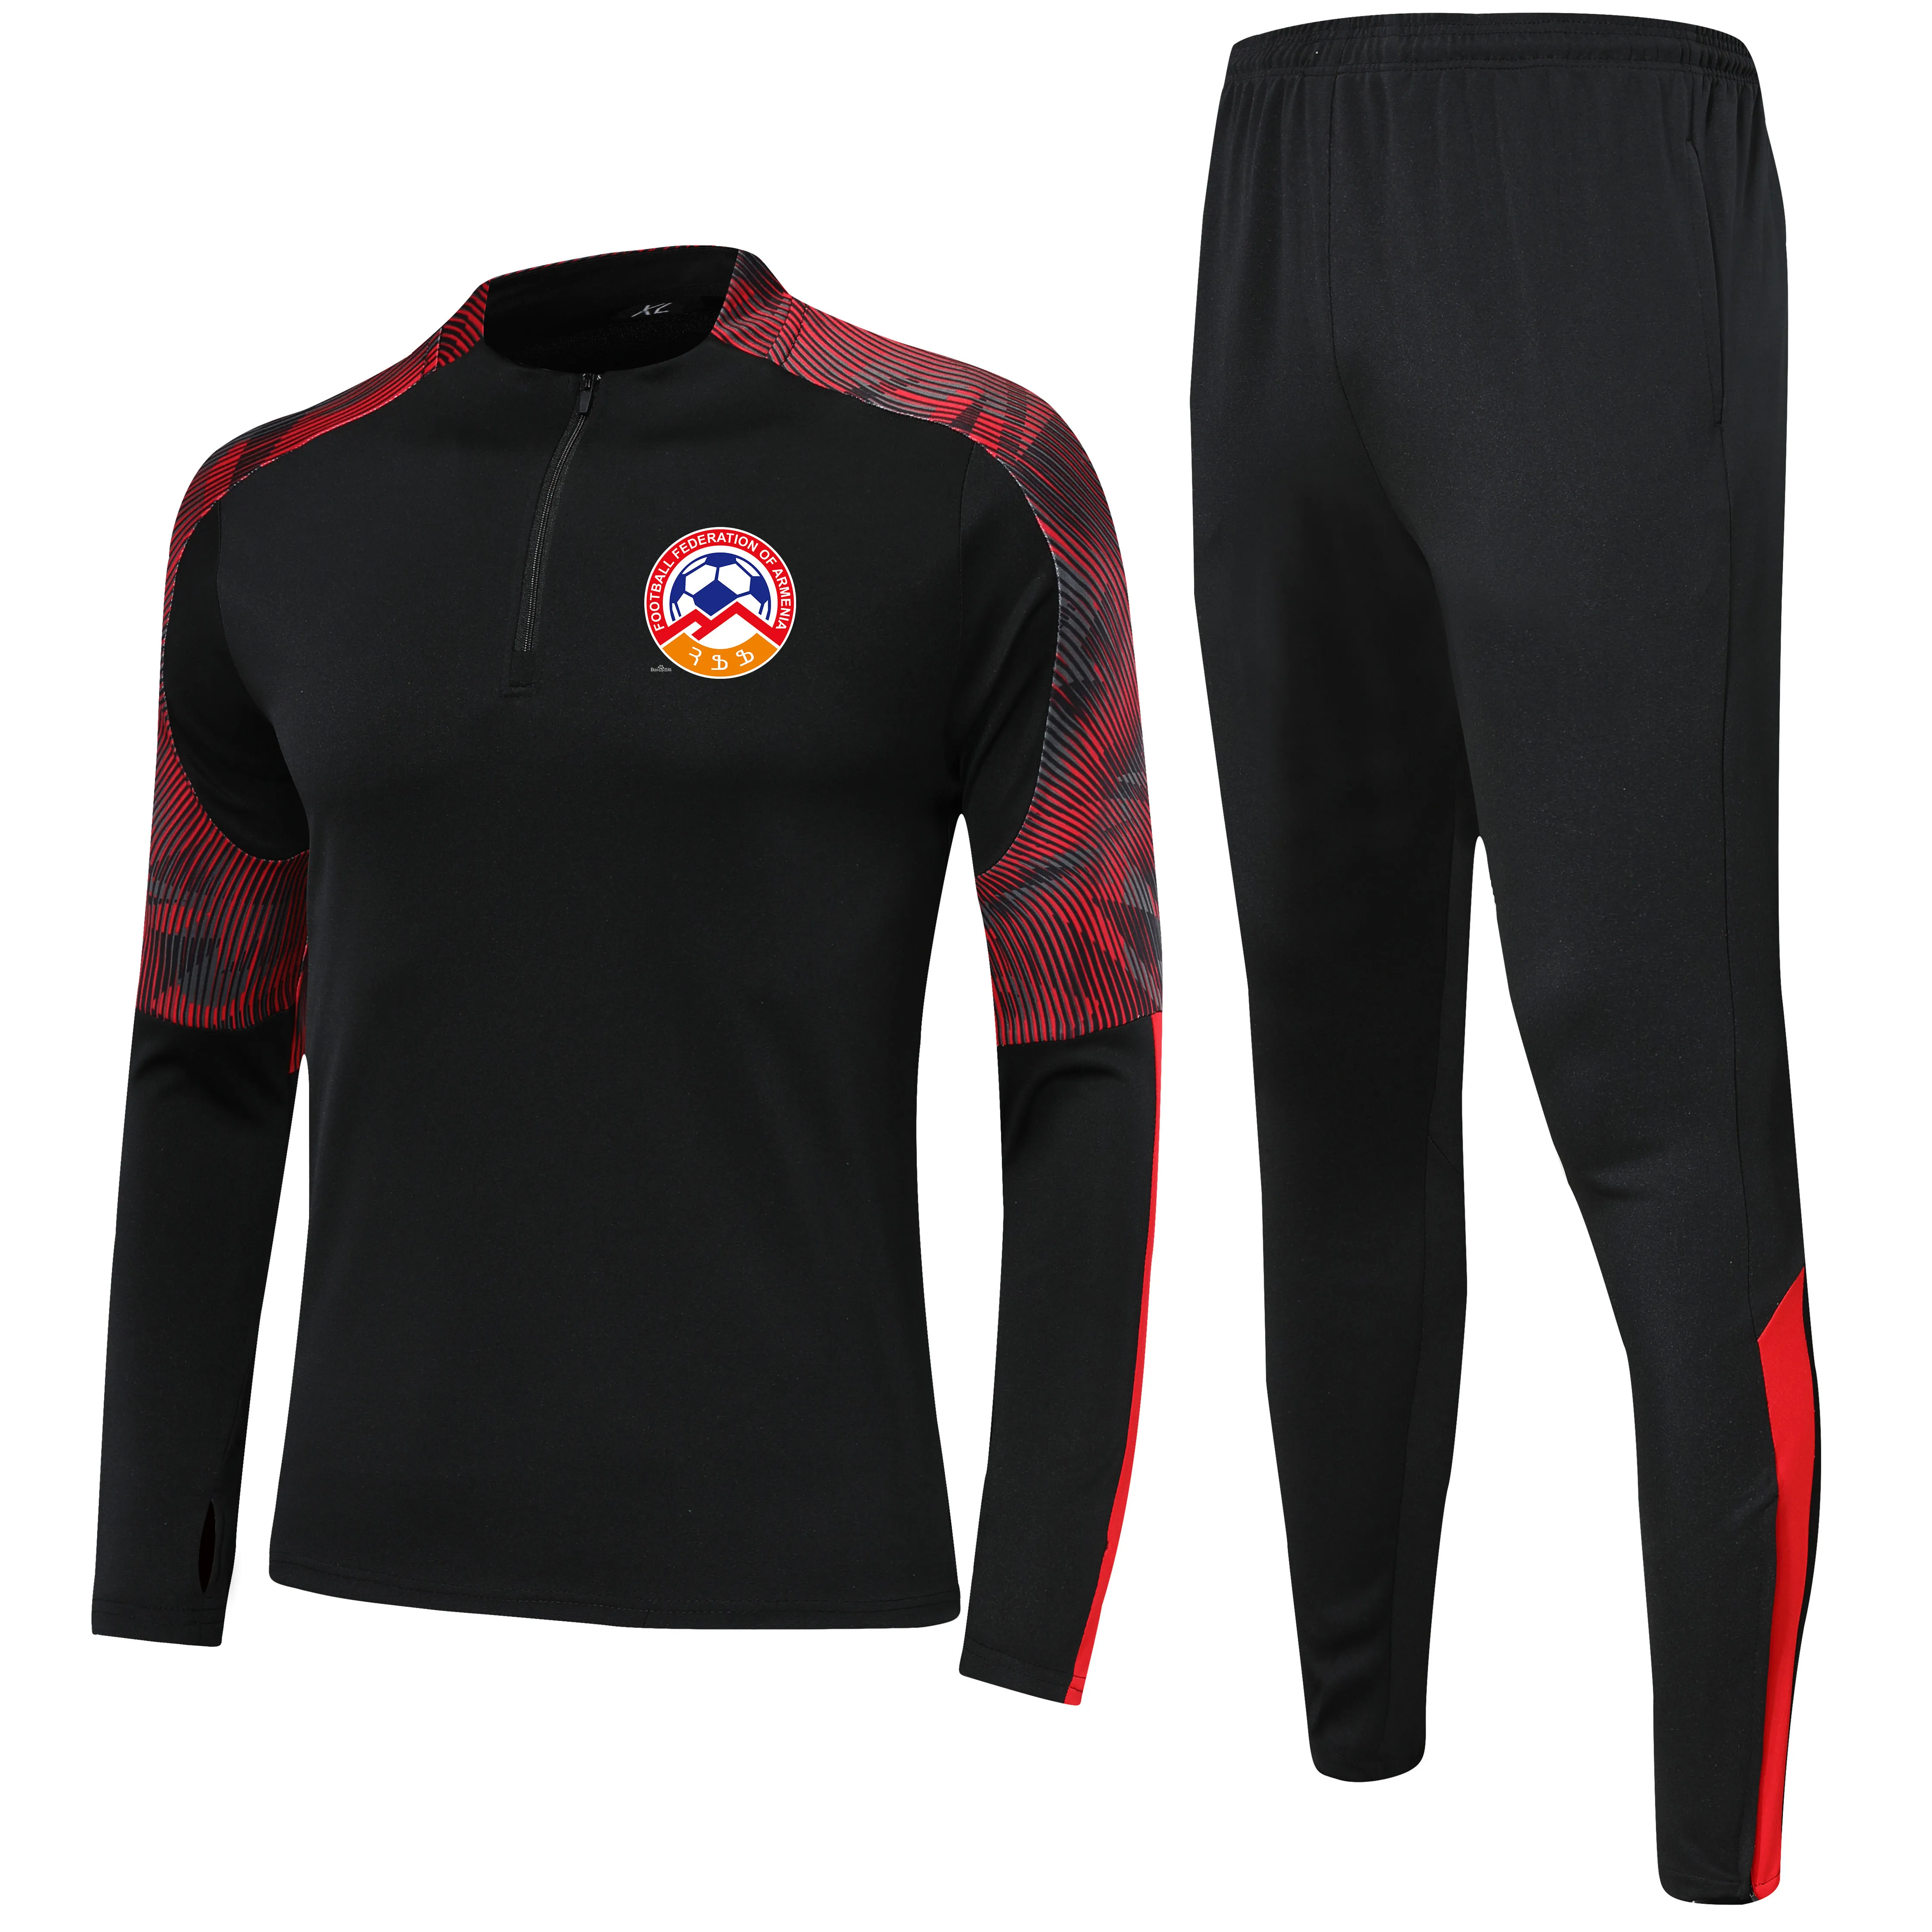 Ermenistan Ulusal Futbol Takımı Çocuk Boyutu 4xs ila 2xl Runsuits Sets Erkek Açık Mekan Takımları Ev Kitleri Ceket Pantolon Spor Giyim Hi233A